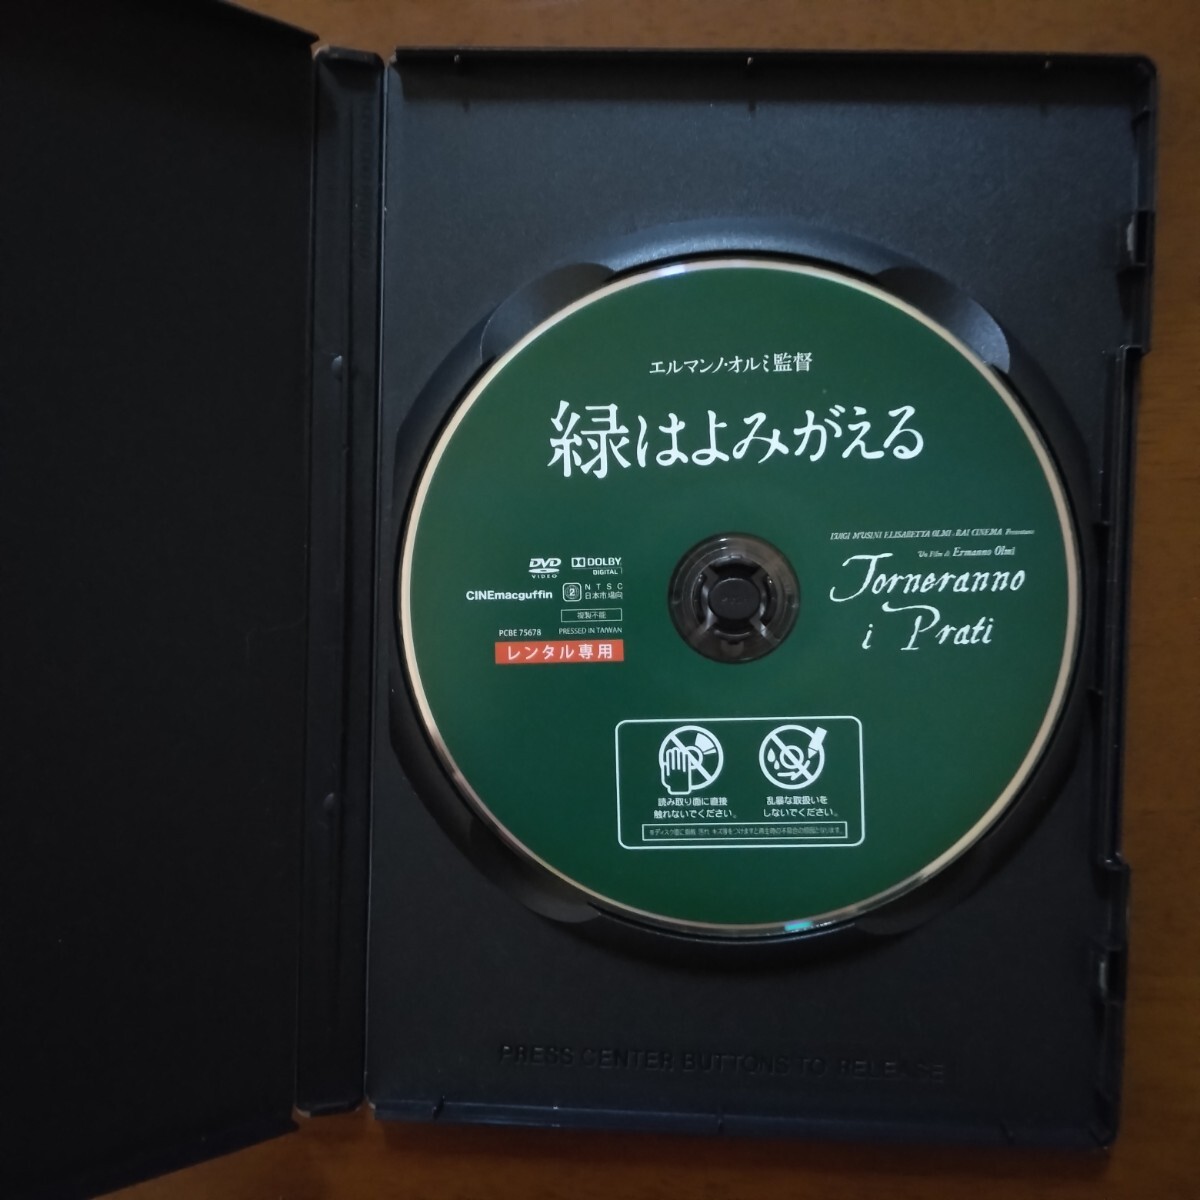 緑はよみがえる DVD レンタル版 エルマンノ・オルミ監督作品の画像4